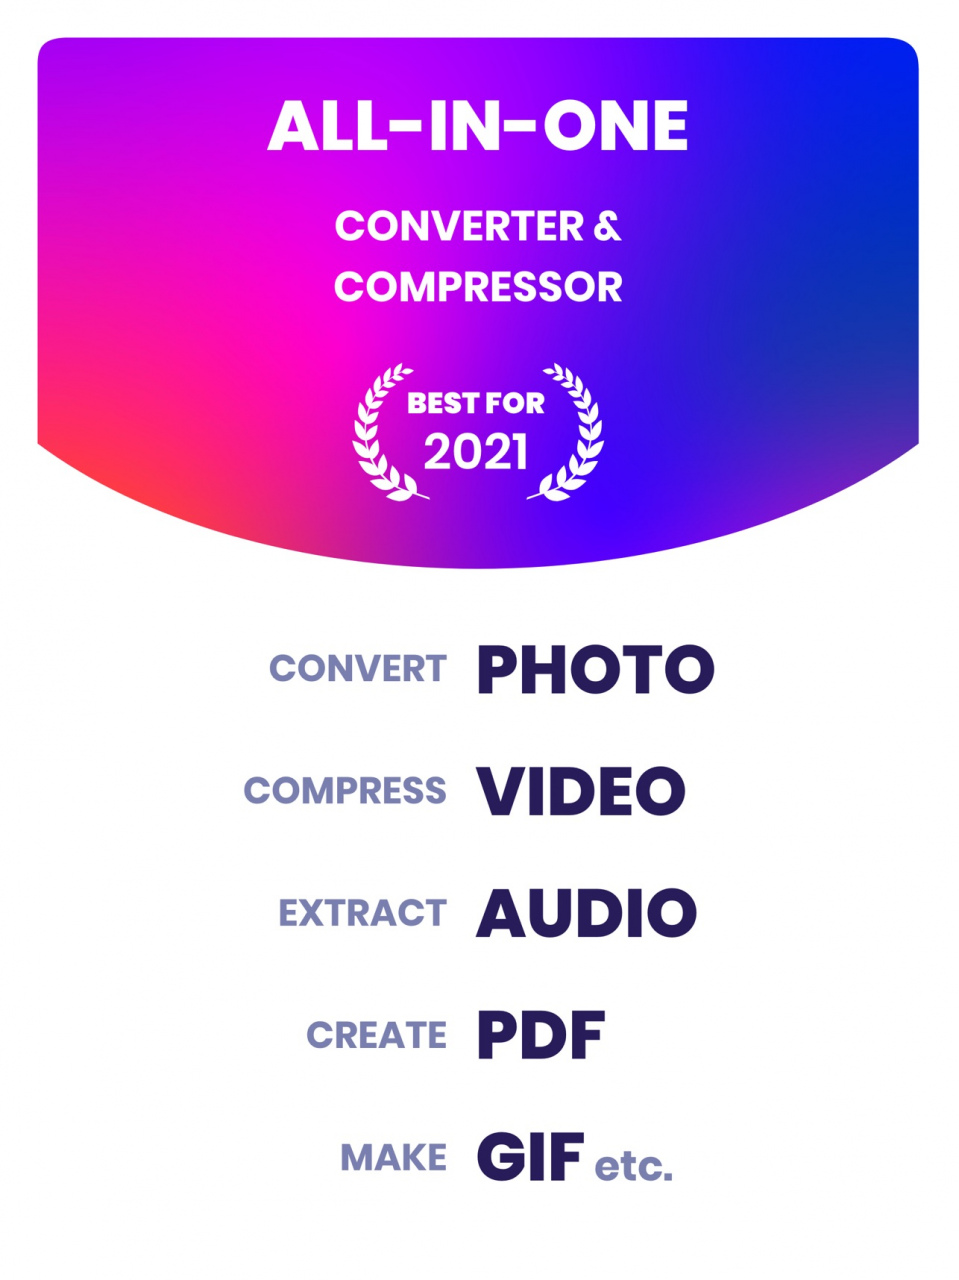 Free PDF to GIF Converter